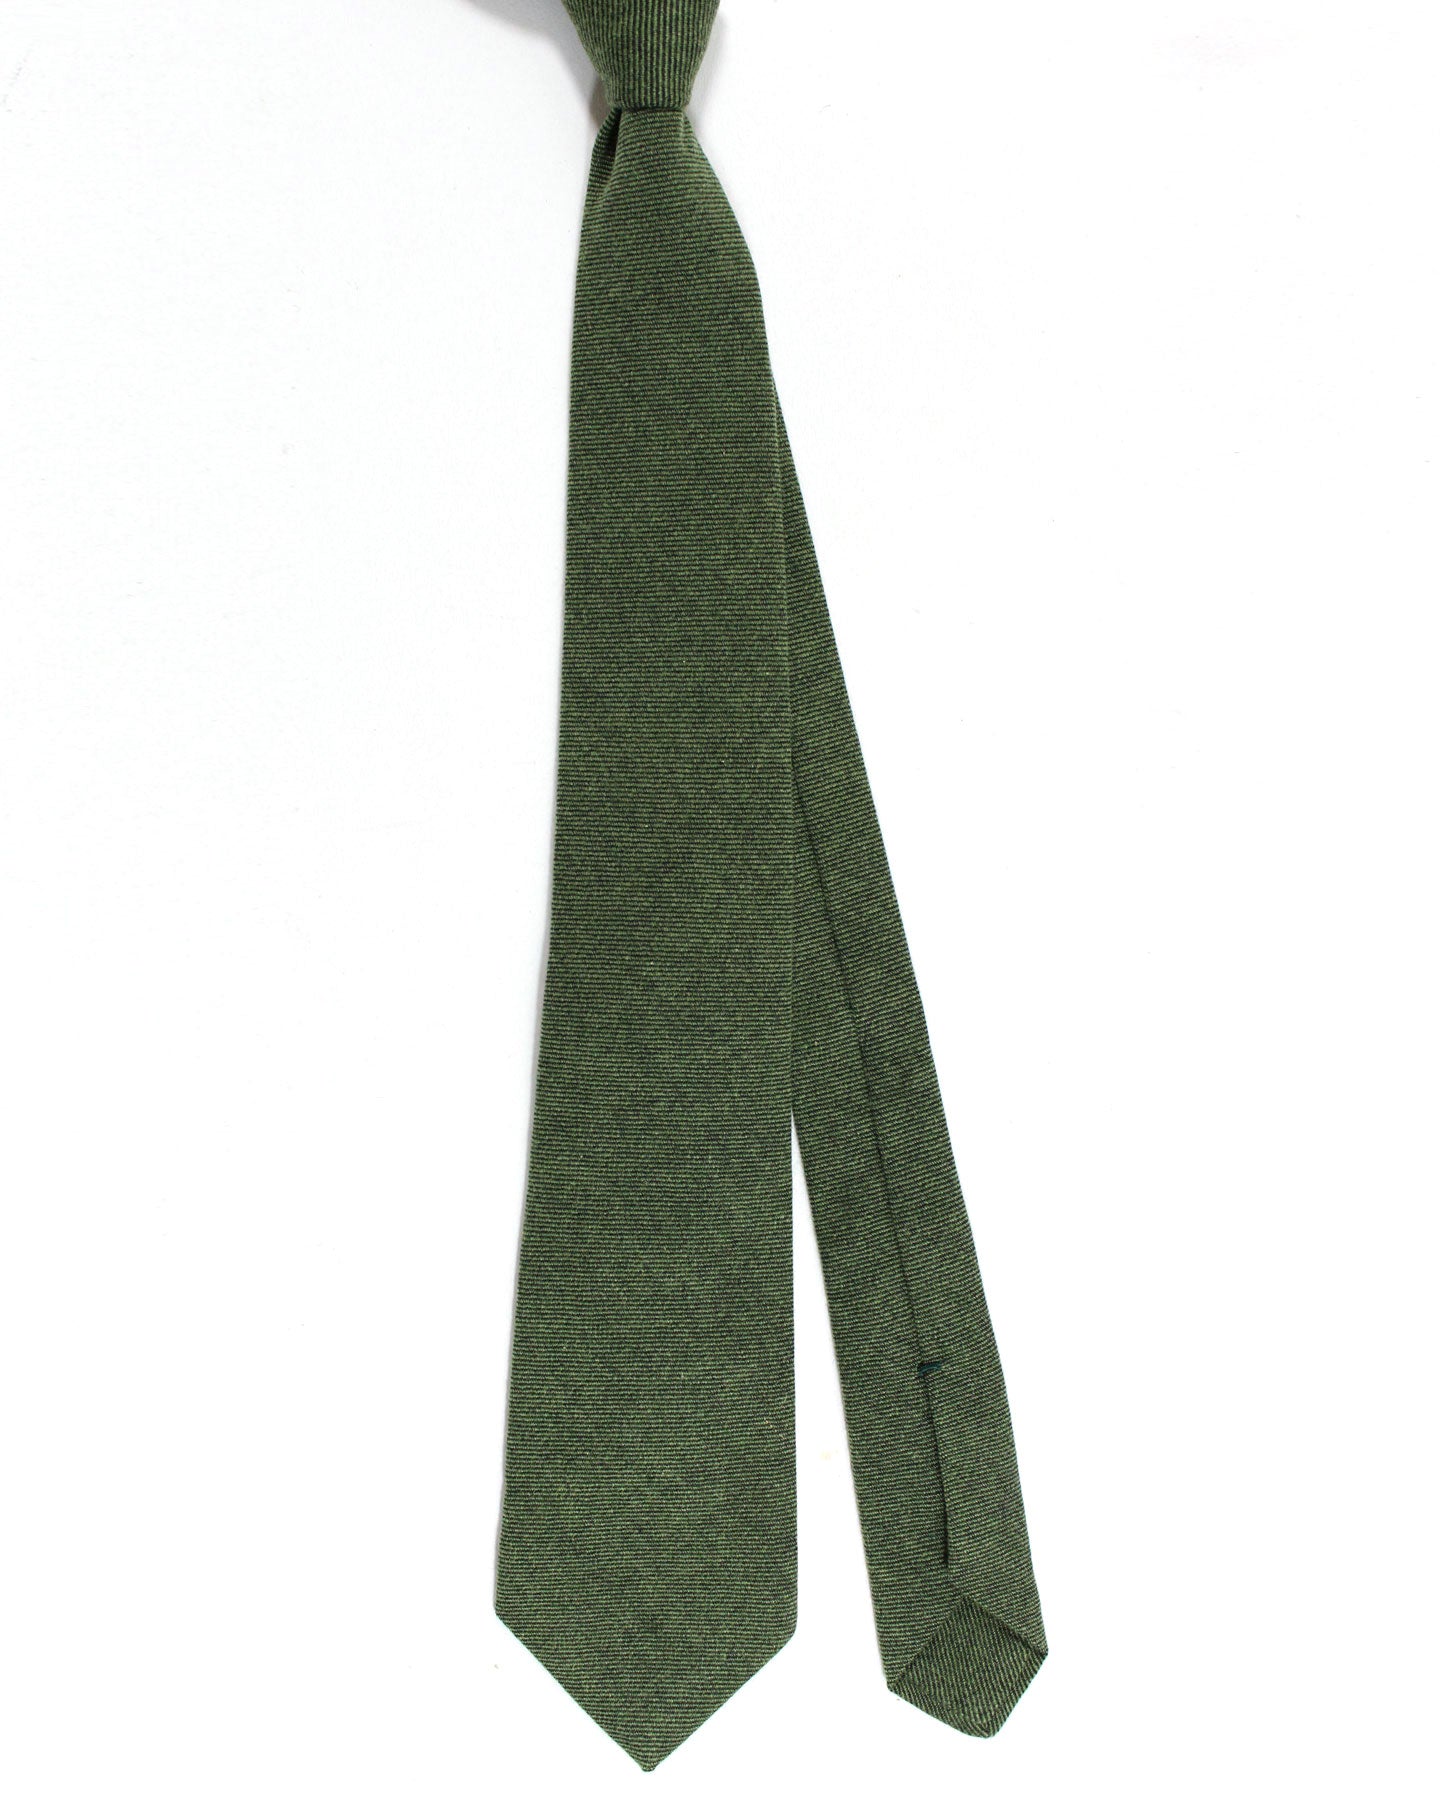 Kiton Cashmere Tie Green Grosgrain Design - Sevenfold Necktie